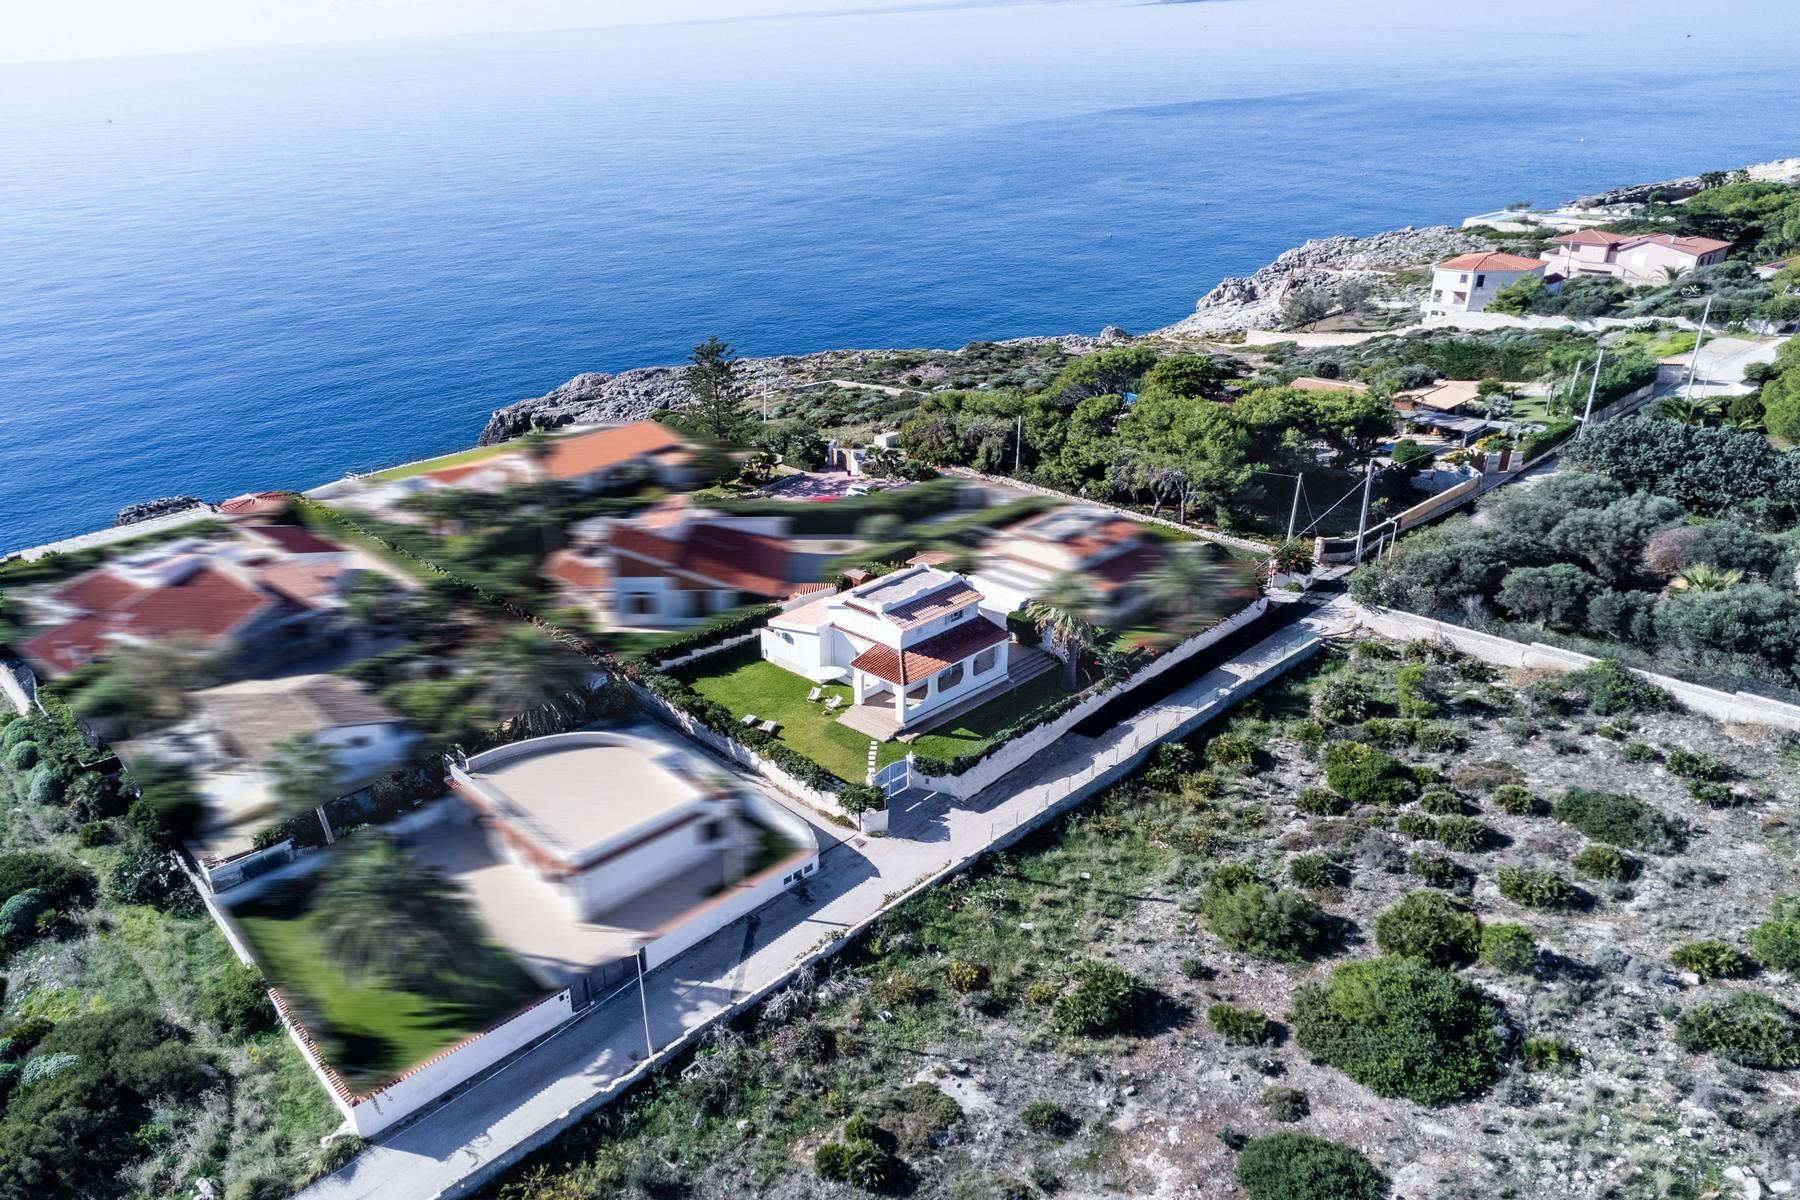 Villa dans la zone marine protégée de Plemmirio avec accès direct à la mer - 33